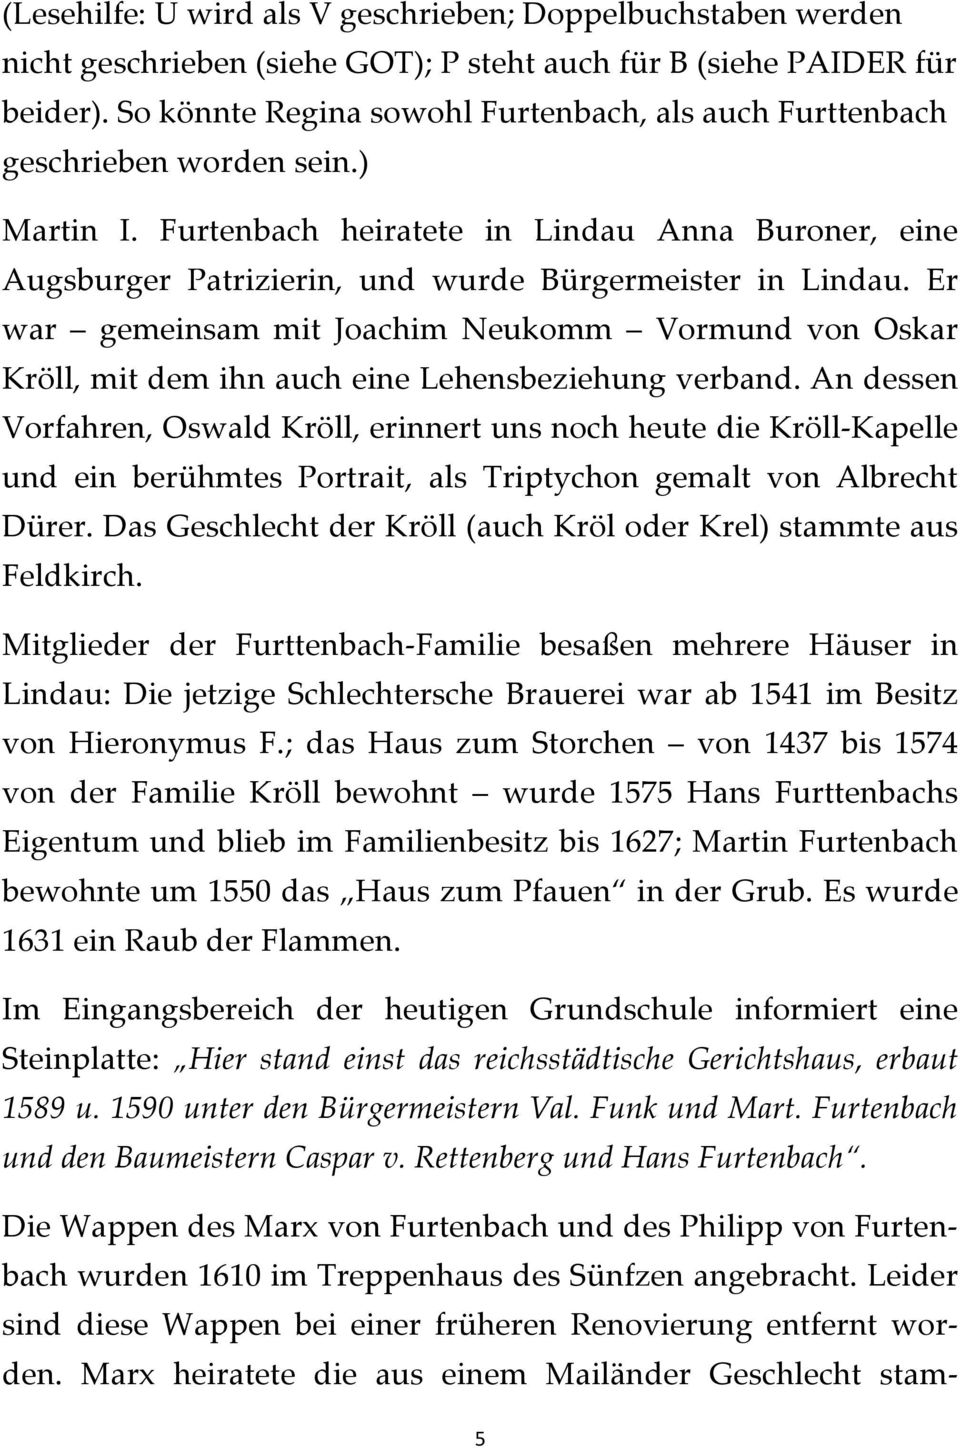 Furtenbach heiratete in Lindau Anna Buroner, eine Augsburger Patrizierin, und wurde Bürgermeister in Lindau.